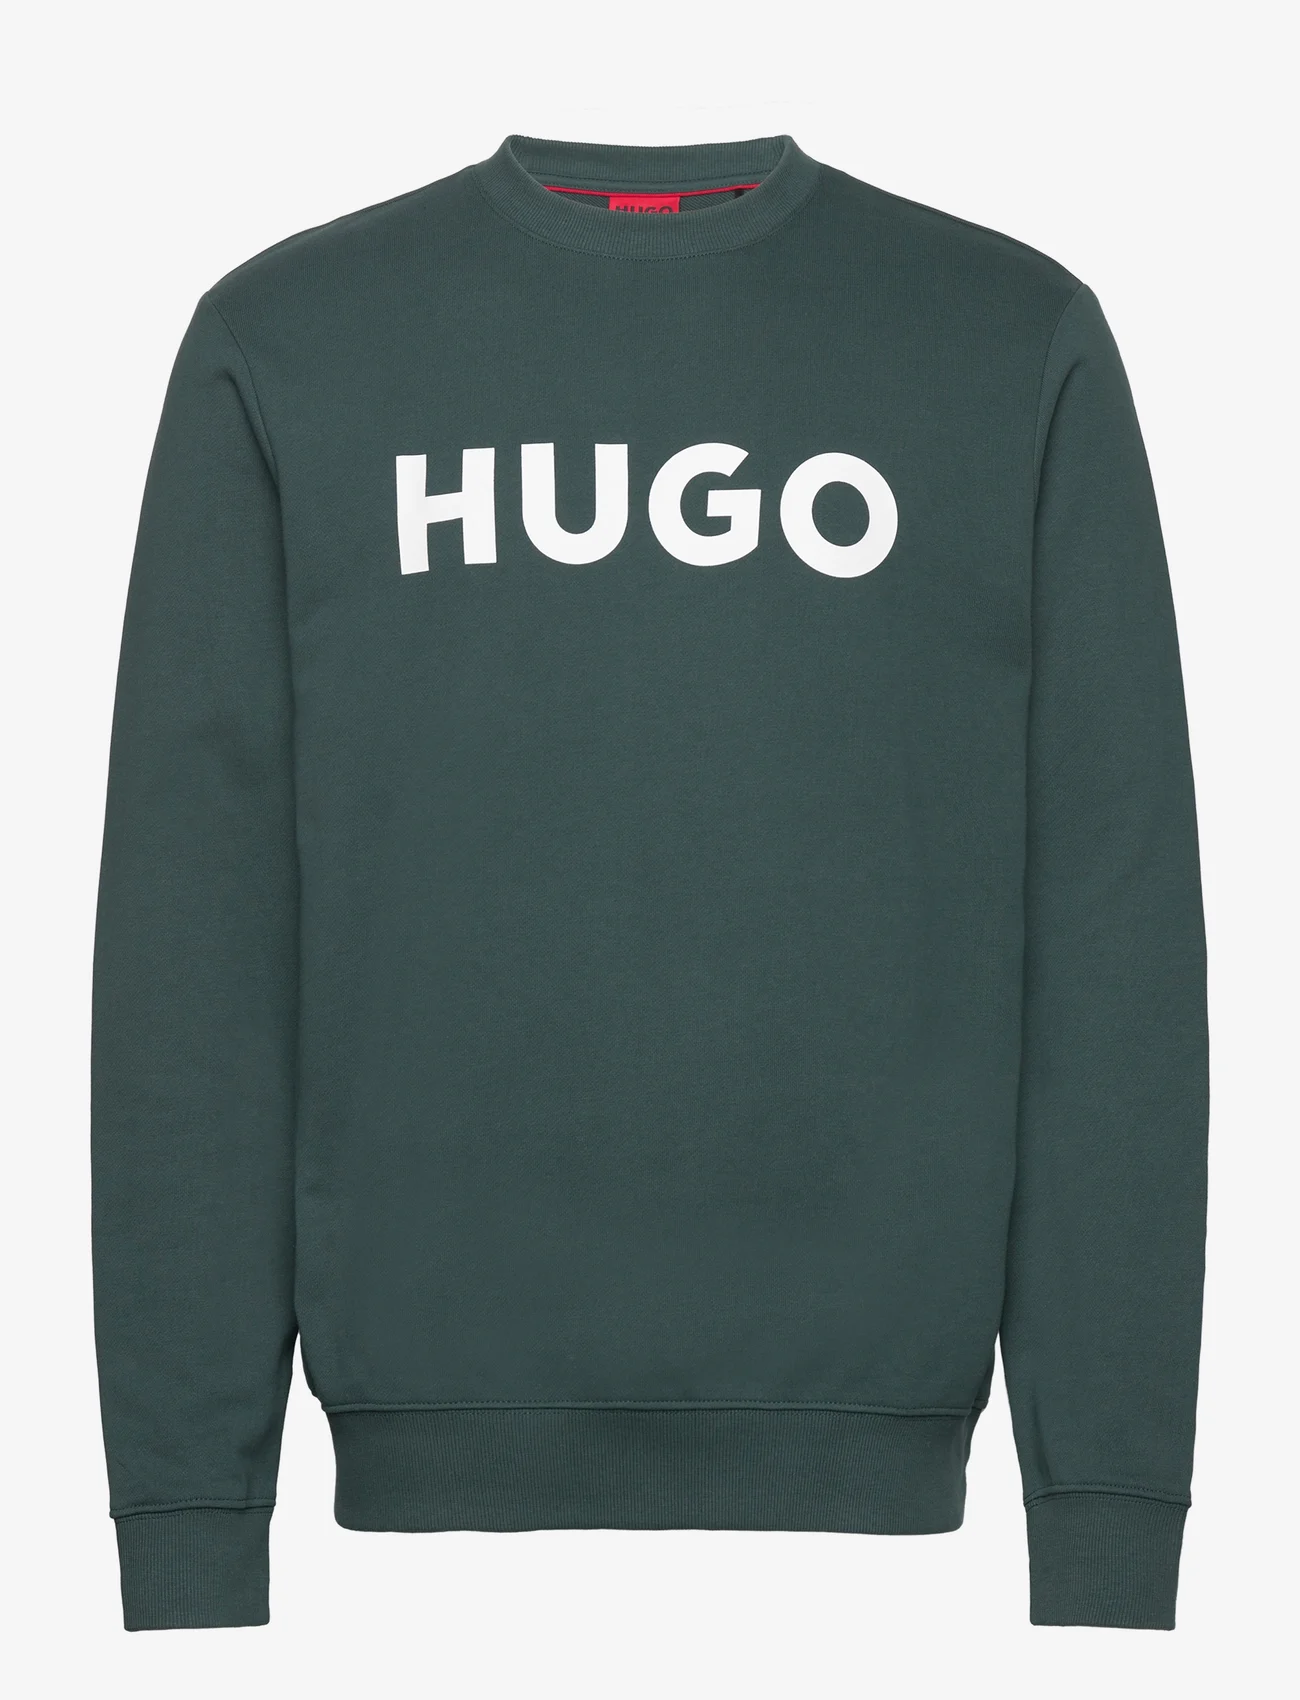 HUGO - Dem - truien - dark green - 0